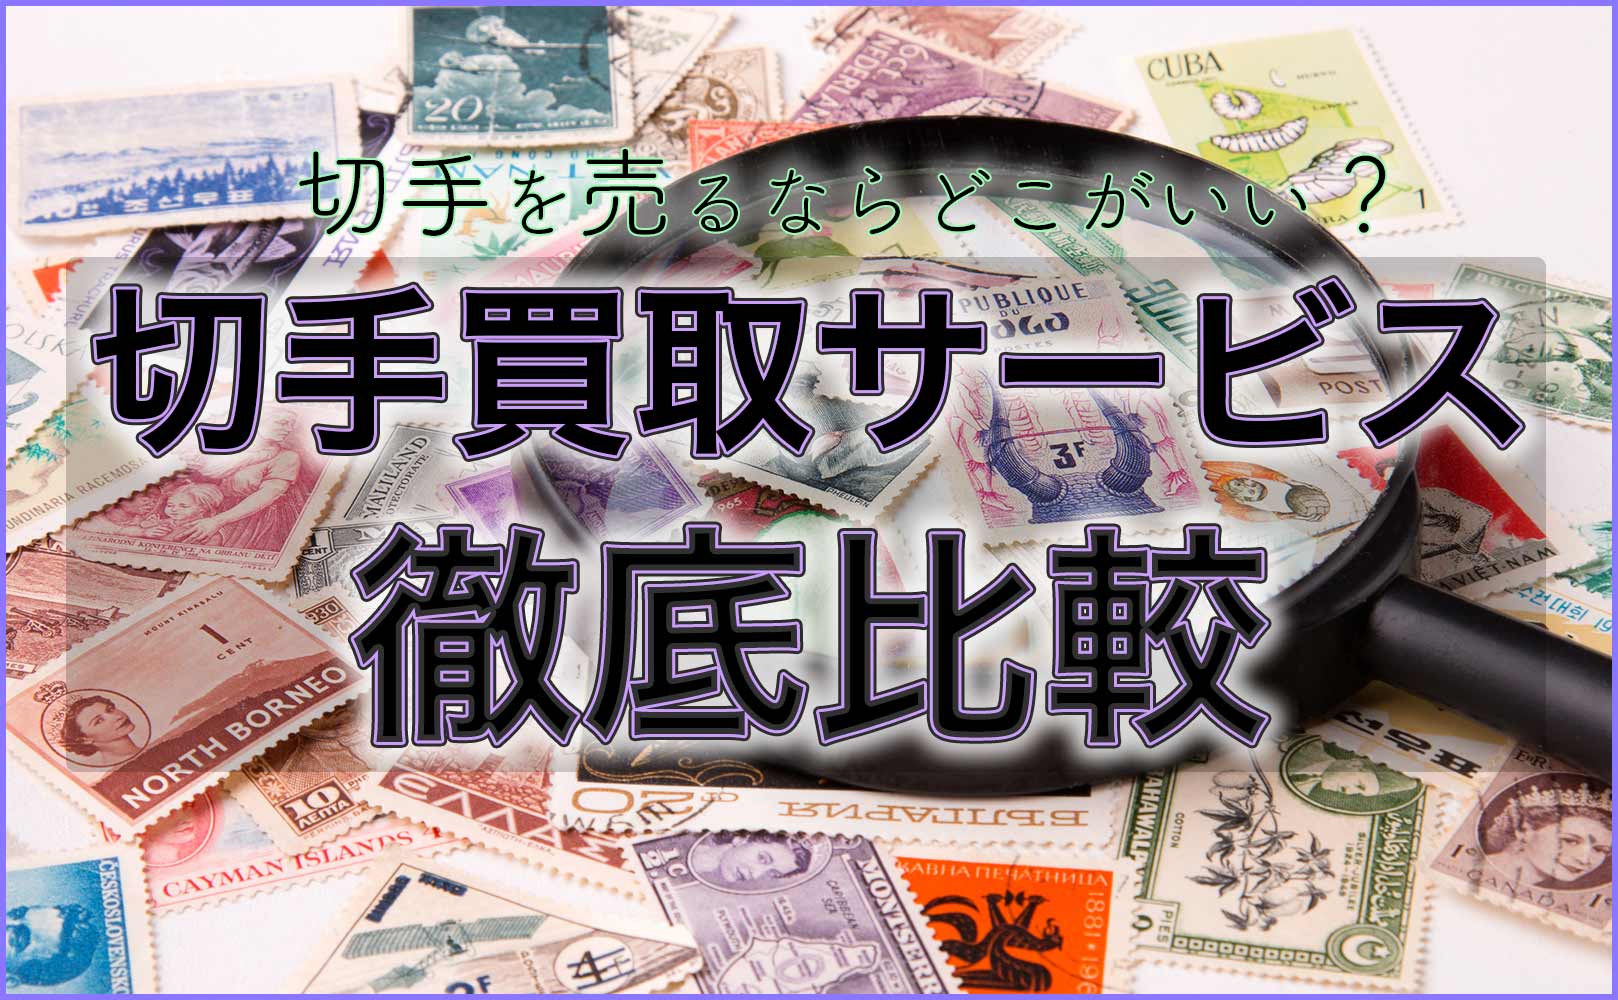 円 コンビニ 94 切手 コンビニで買える切手の種類や購入時の注意点を紹介